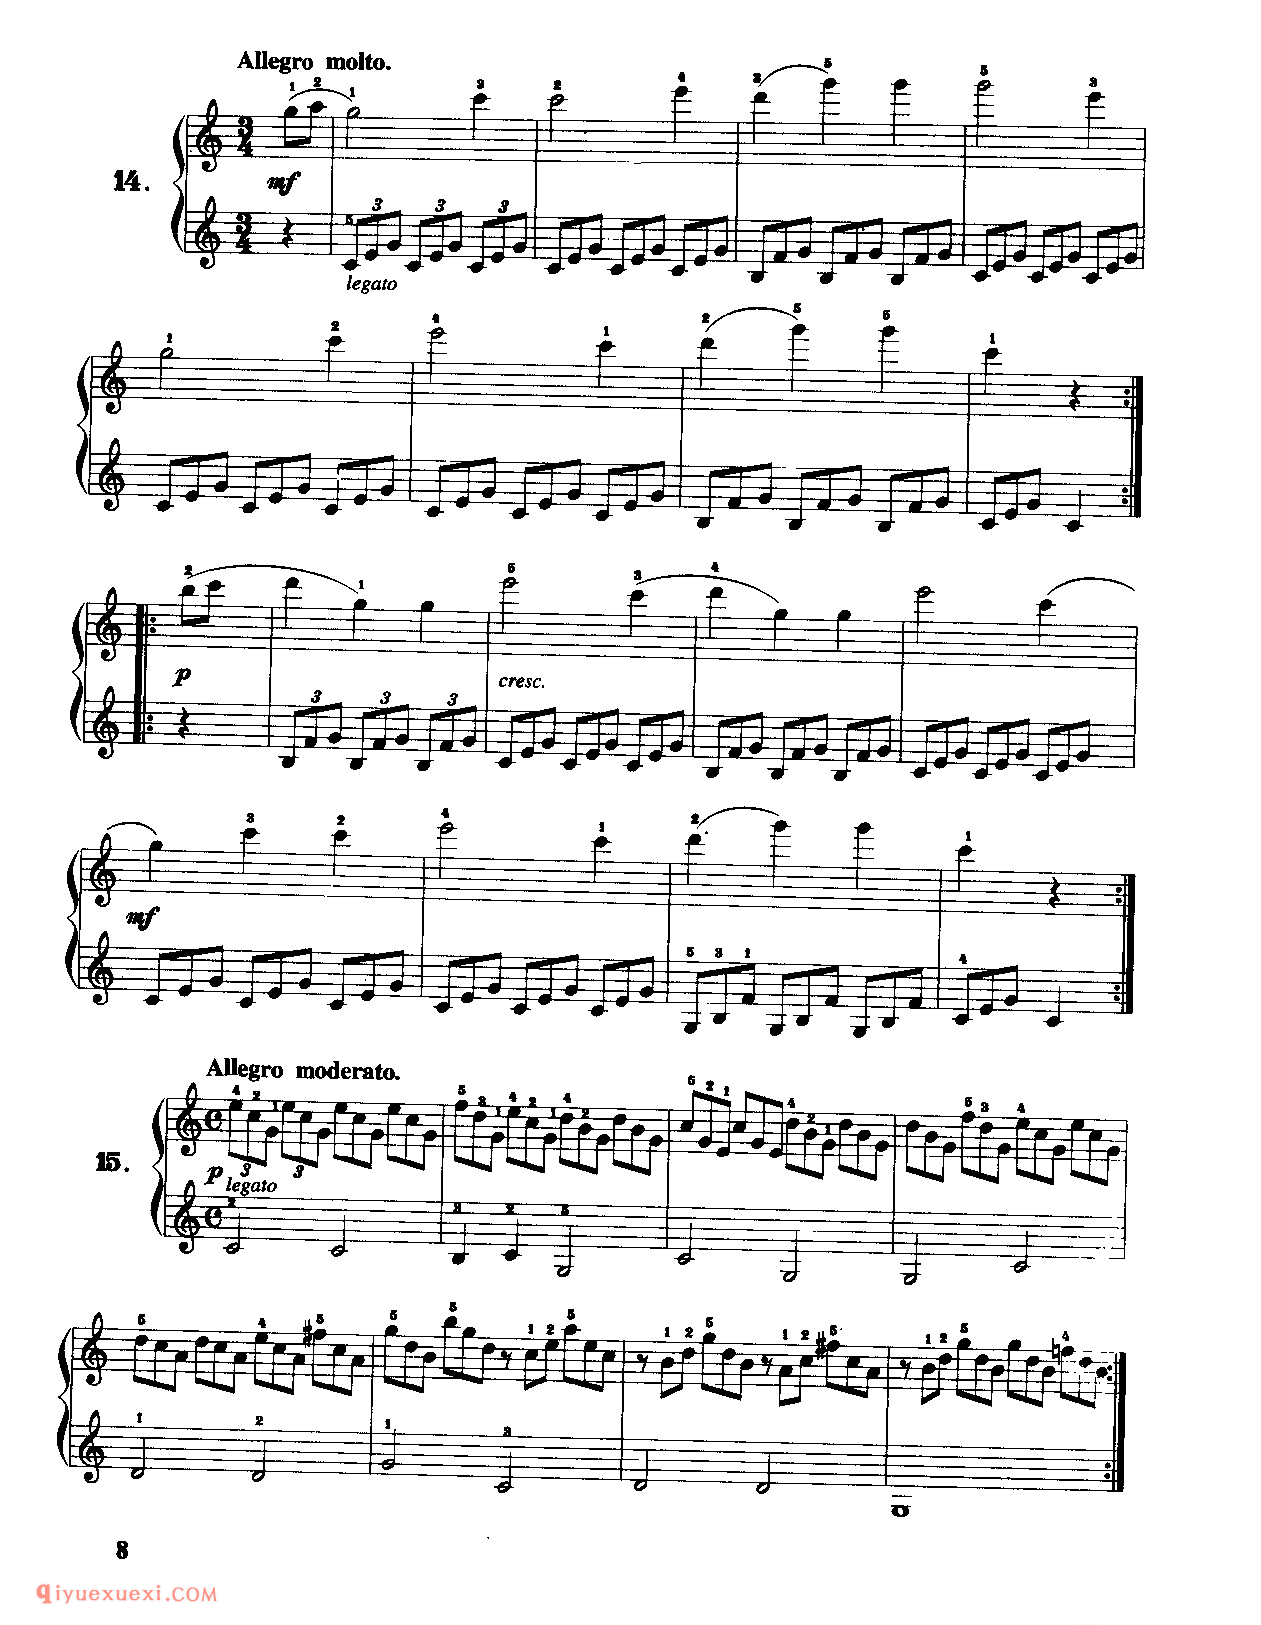 100首简易钢琴练习曲(作品139)_车尔尼钢琴练习曲集